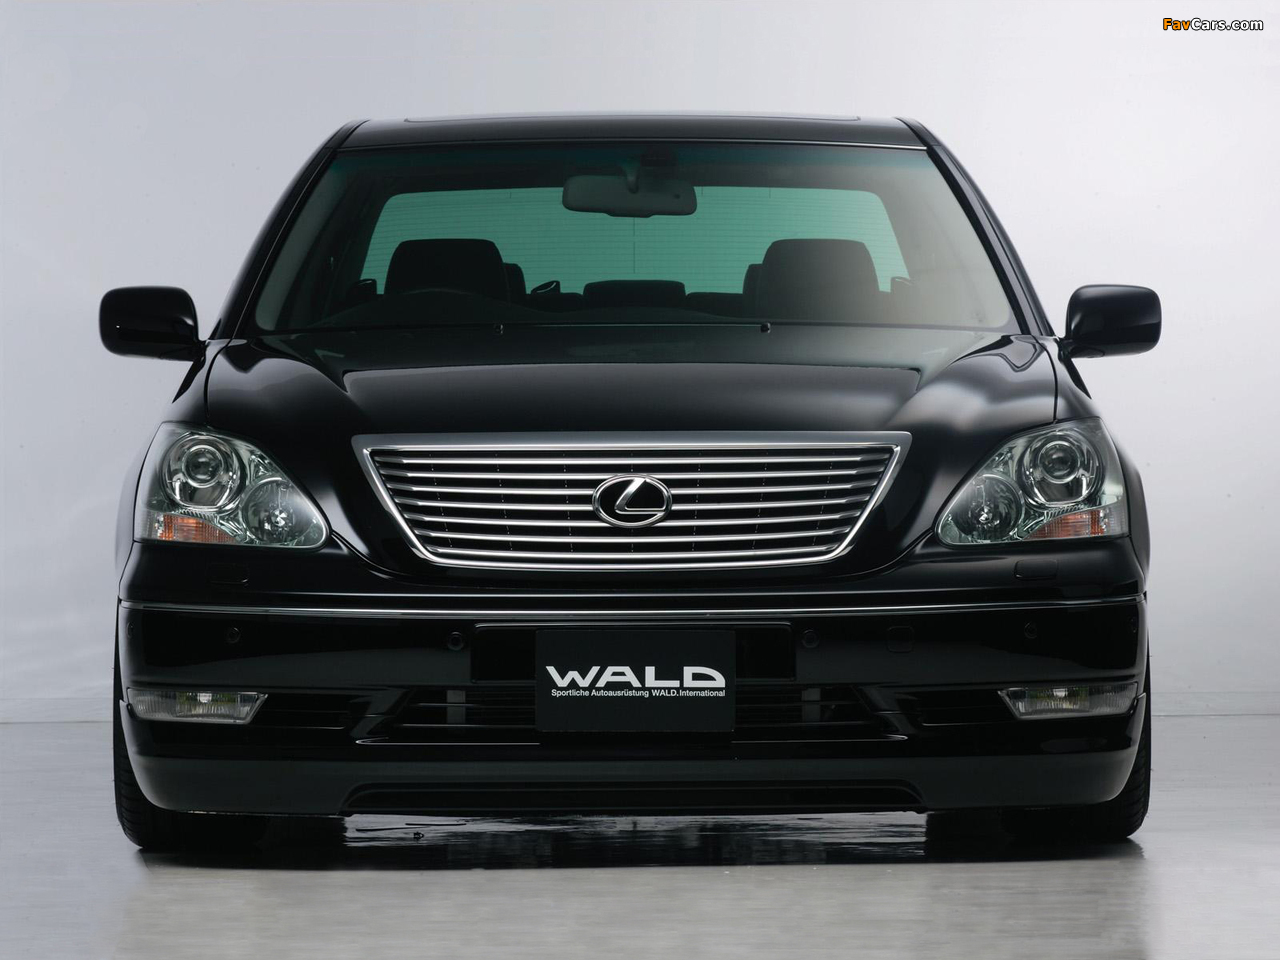 WALD Lexus LS 430 (UCF30) 2003–06 pictures (1280 x 960)